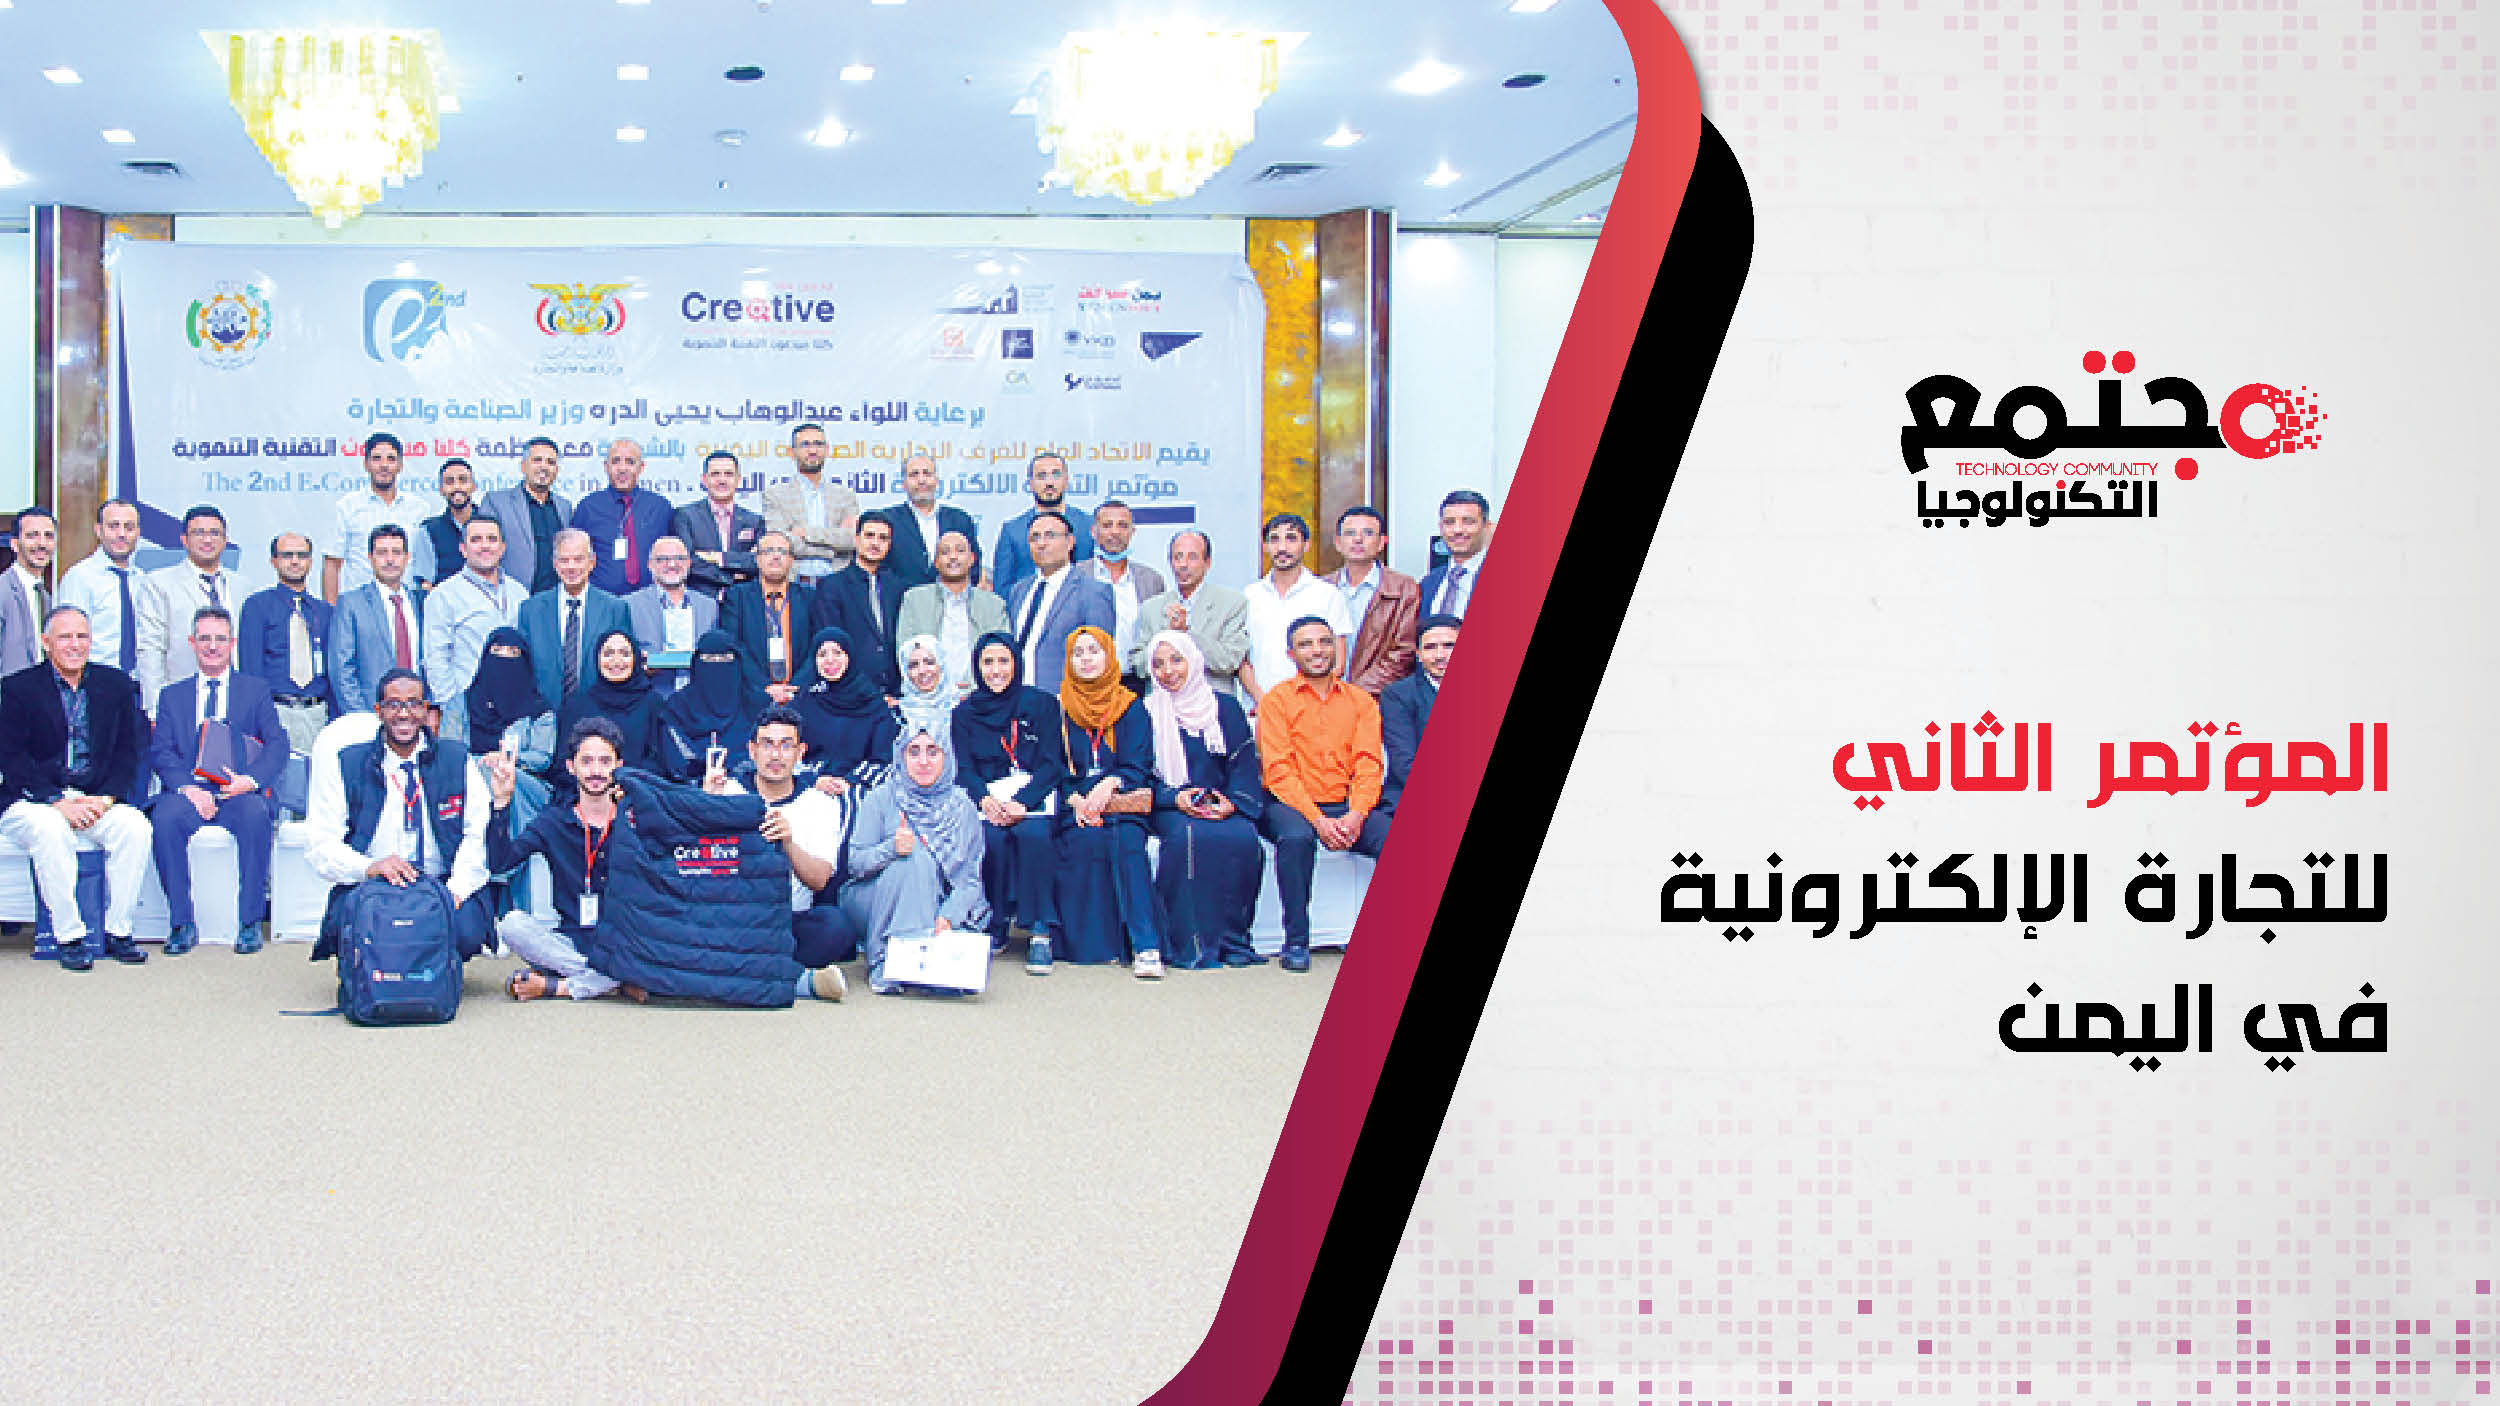 المؤتمر الثاني للتجارة الإلكترونية في اليمن